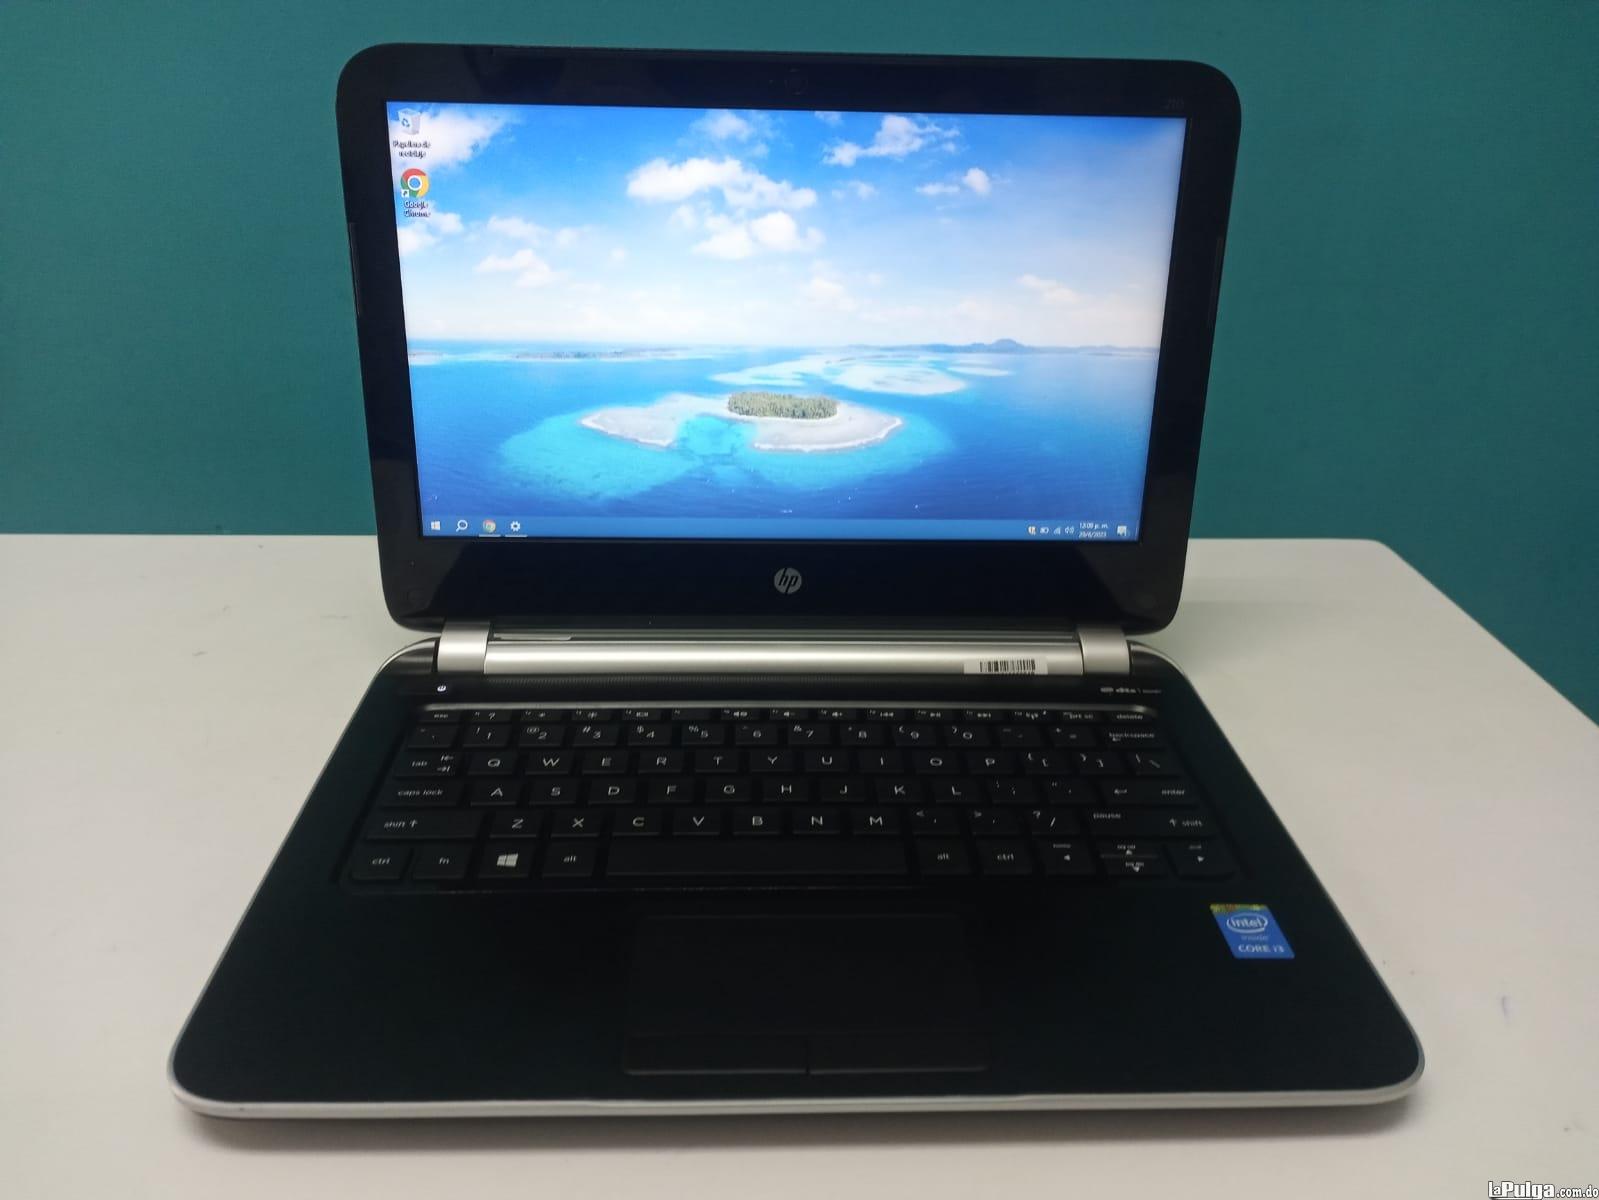 Laptop HP 210 G1 / 4th Gen Intel Core i3 / 4GB DDR3 / 120GB SSD Foto 7161769-5.jpg